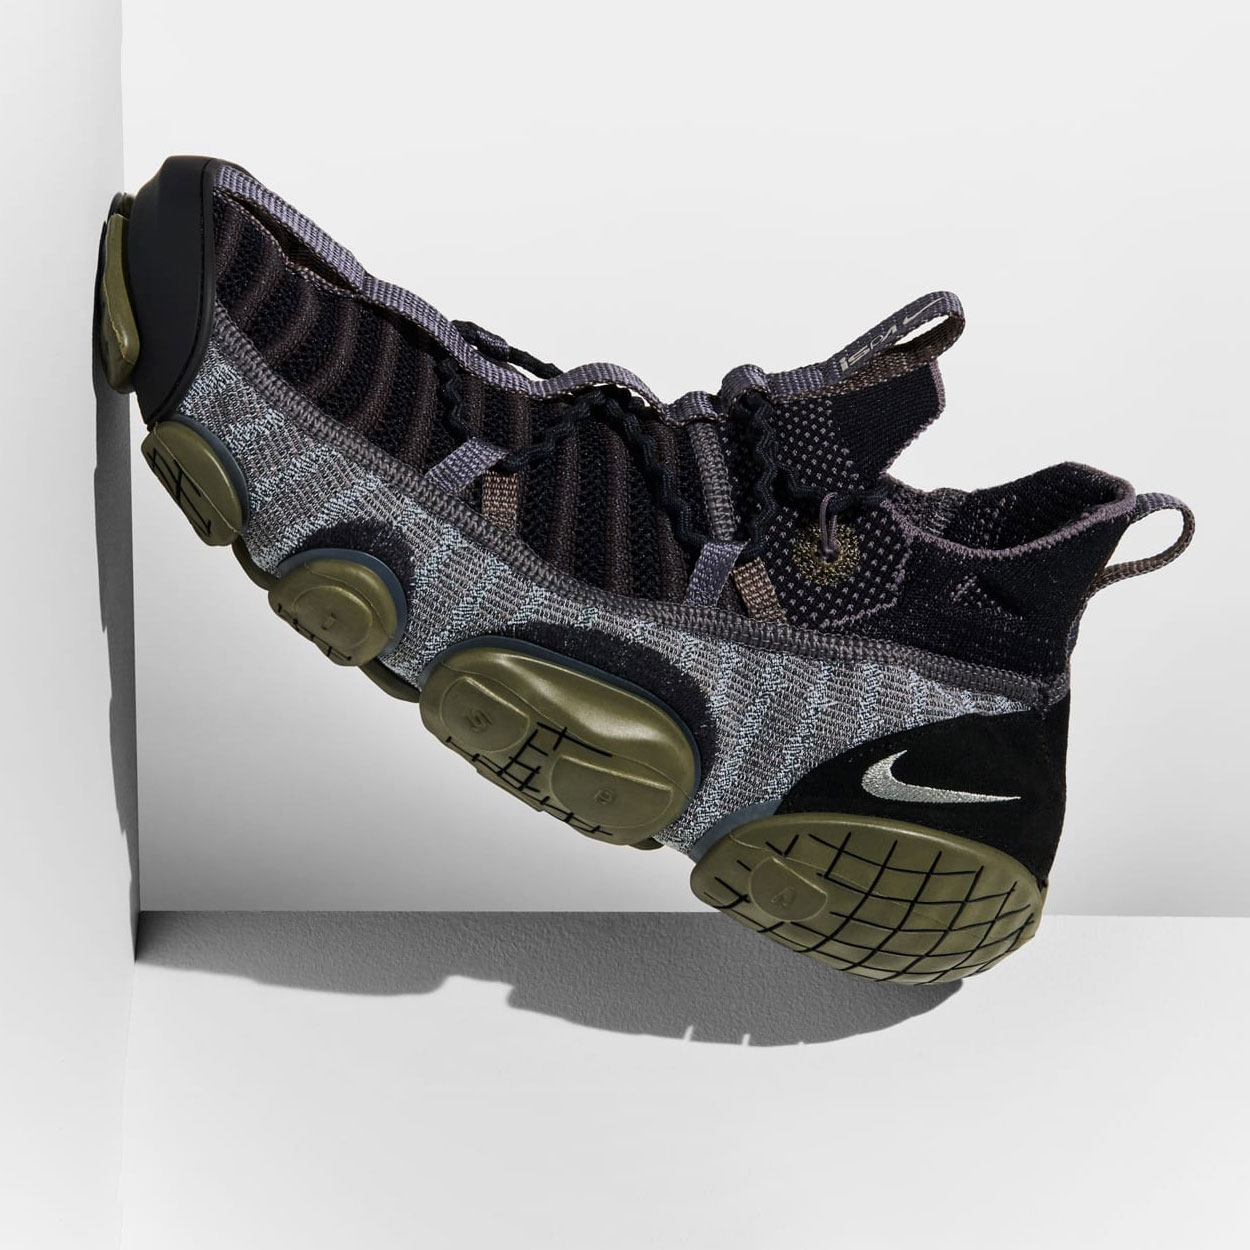 Nike ISPA Link “Black/Medium Olive” CN2269-003